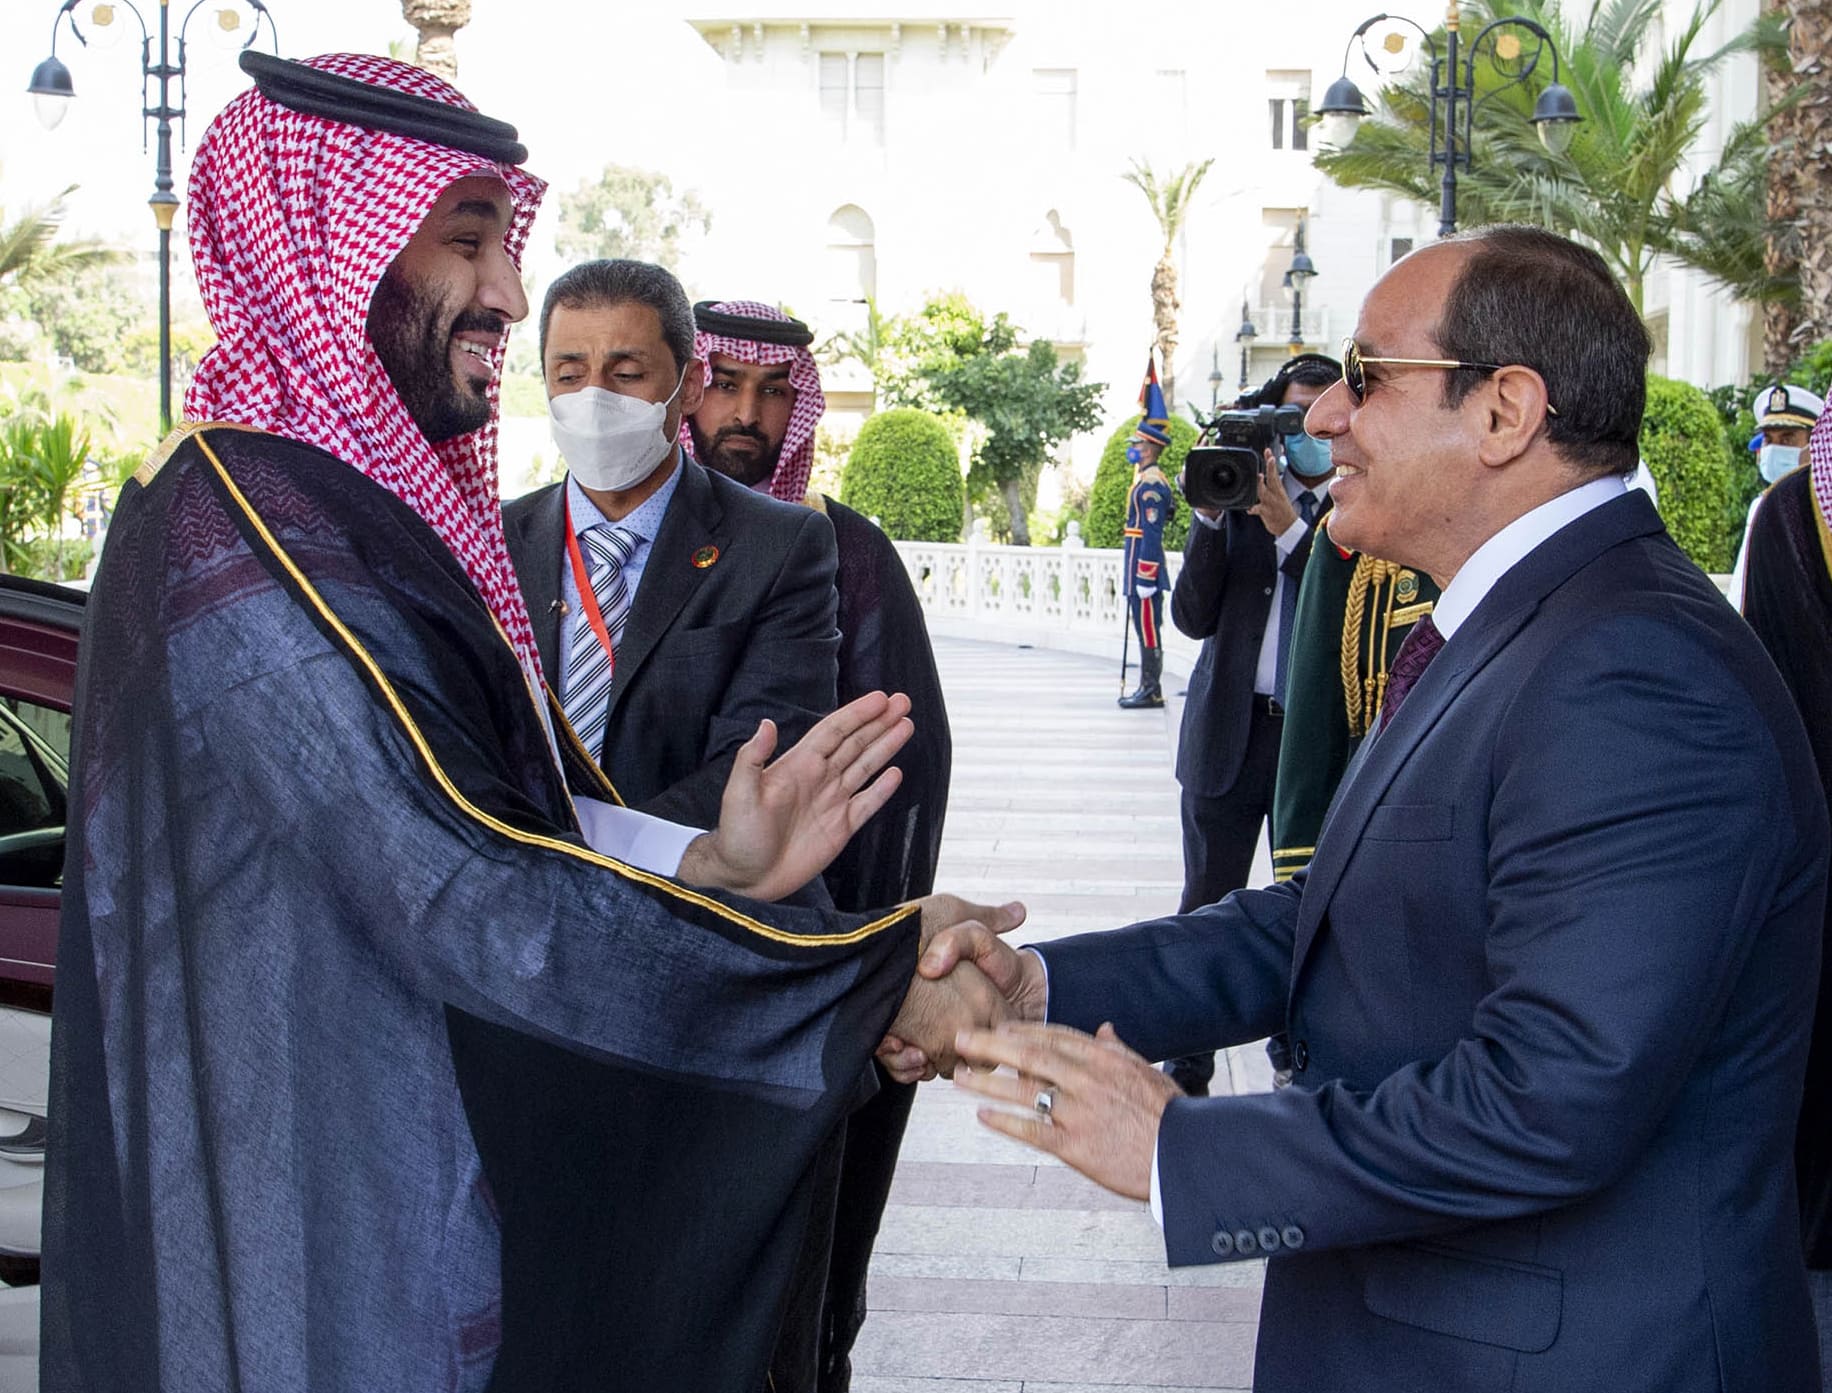 נשיא מצרים עבד אל-פתח א-סיסי ויורש העצר הסעודי מוחמד בן סלמאן בקהיר, 21 ביוני 2022 (צילום: Bandar Aljaloud/Saudi Royal Palace via AP)